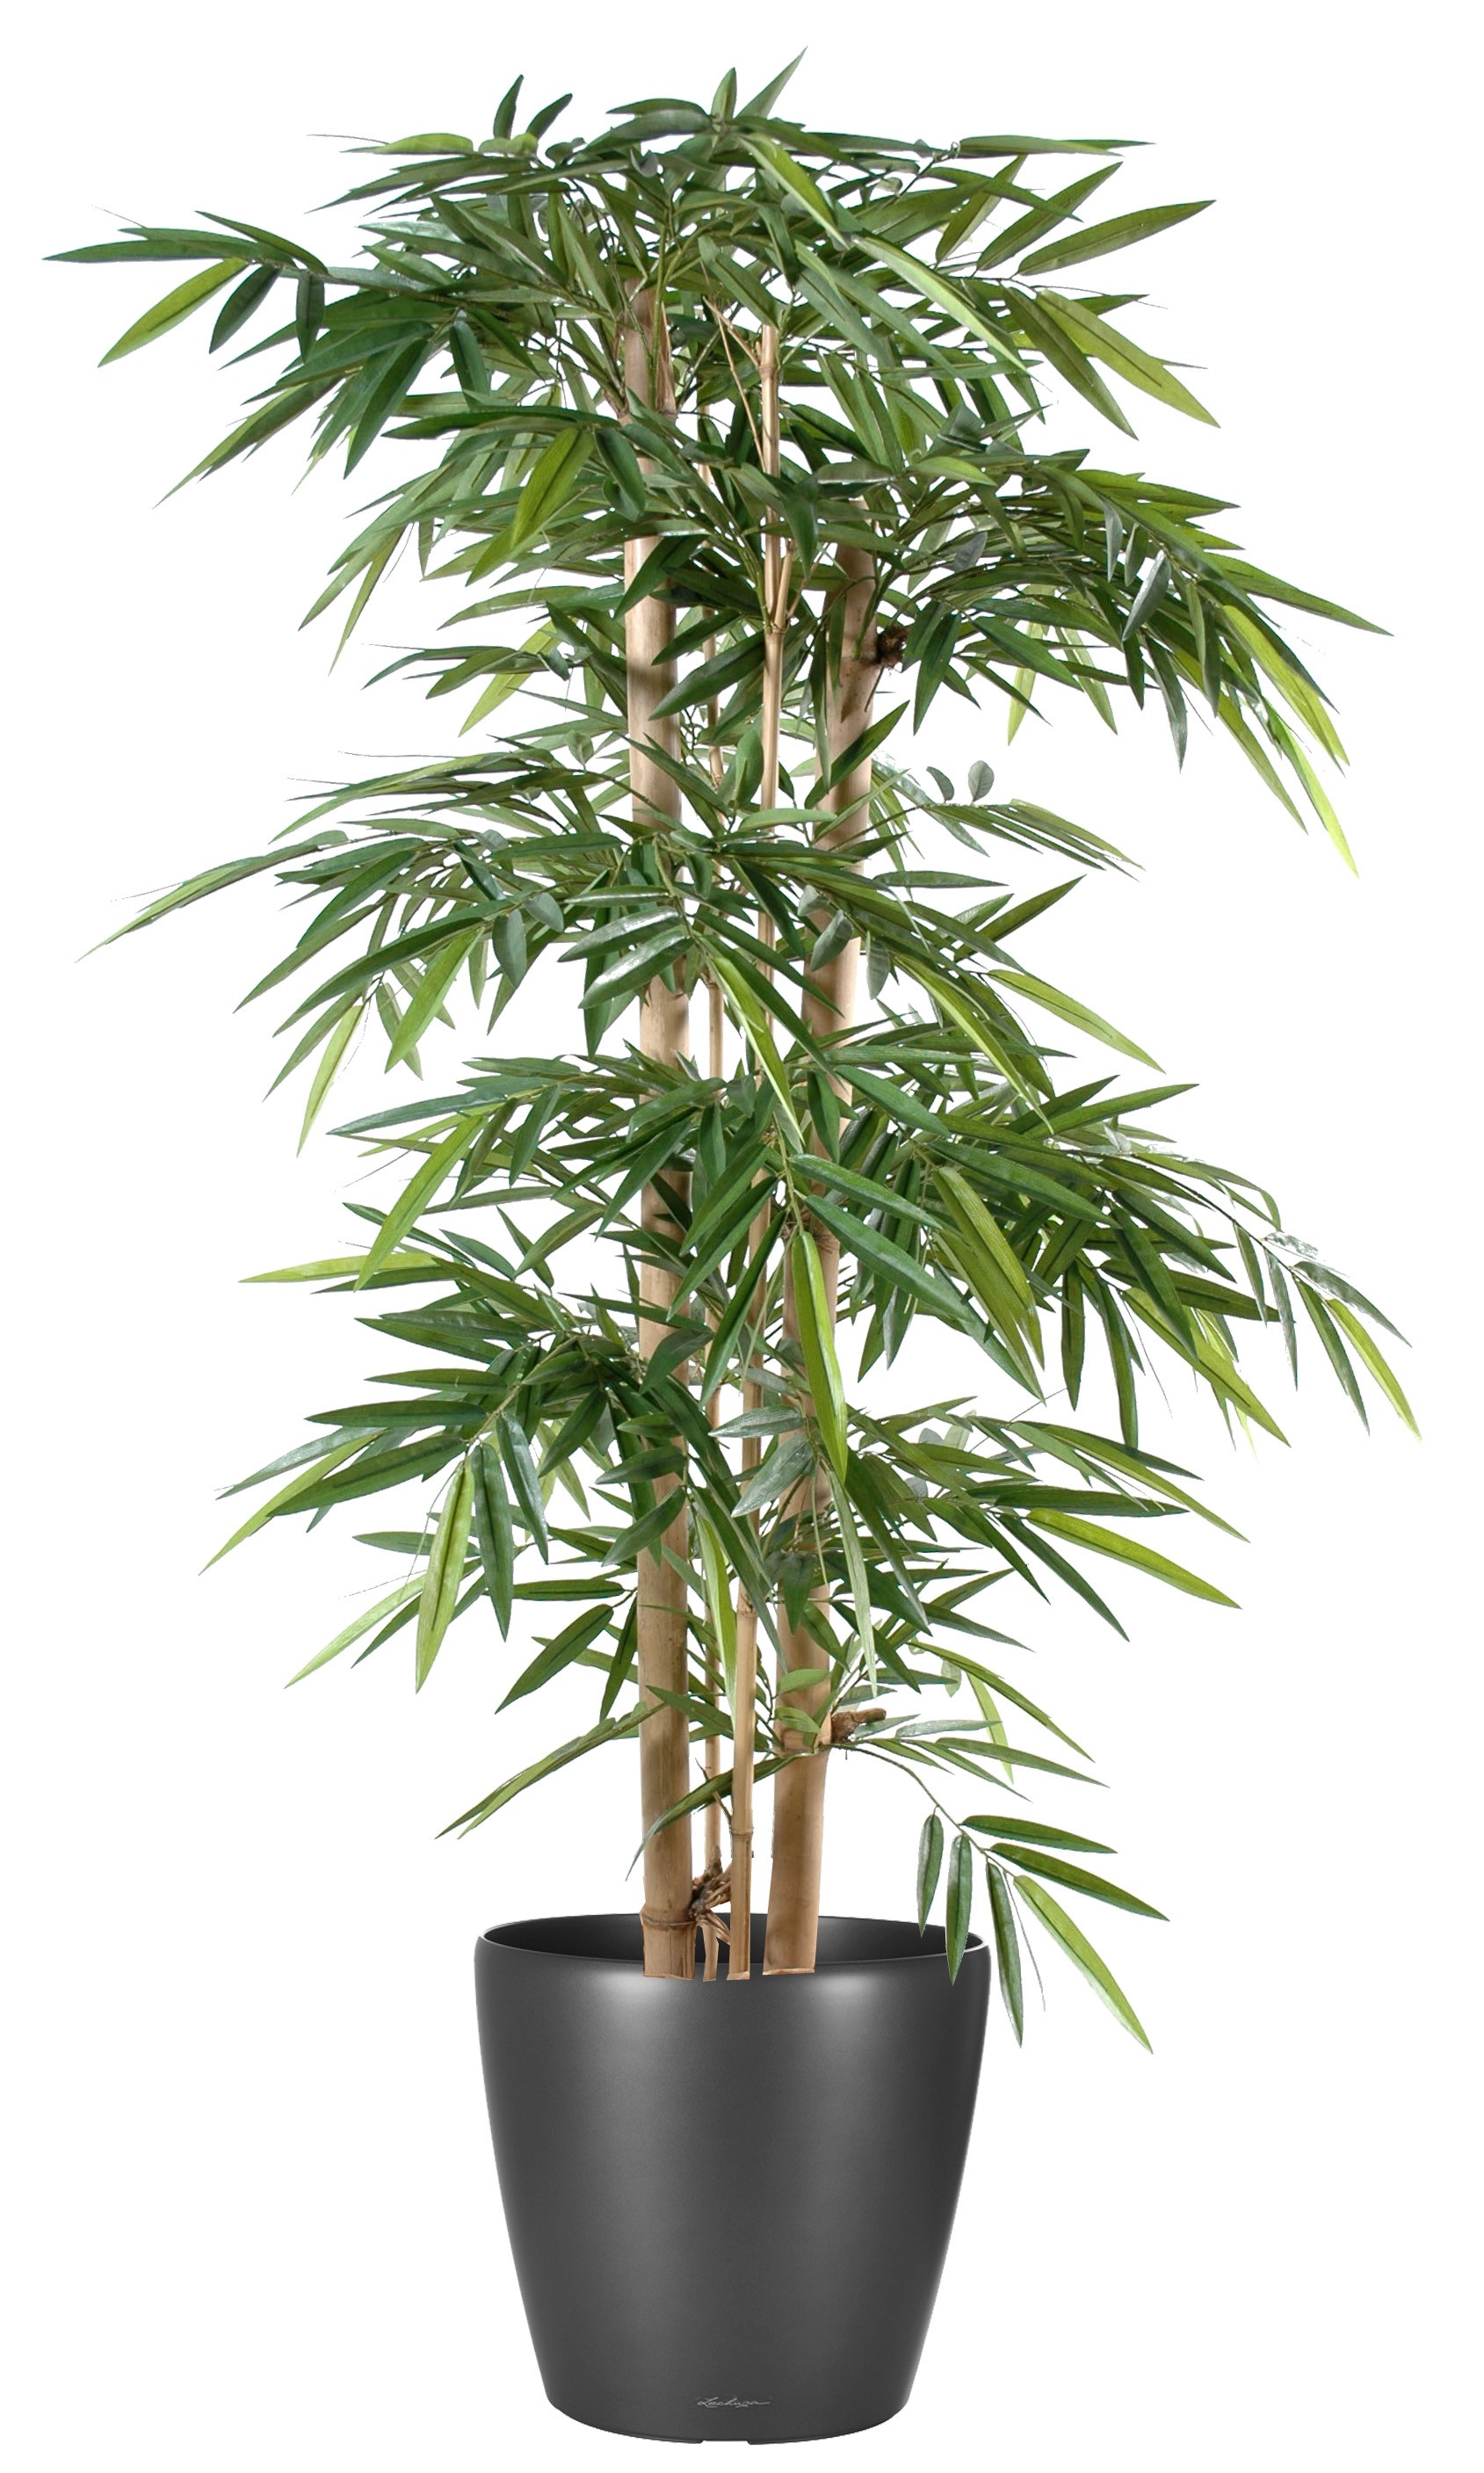 Bamboo cane 100 x 400 cm – Le bambou vert